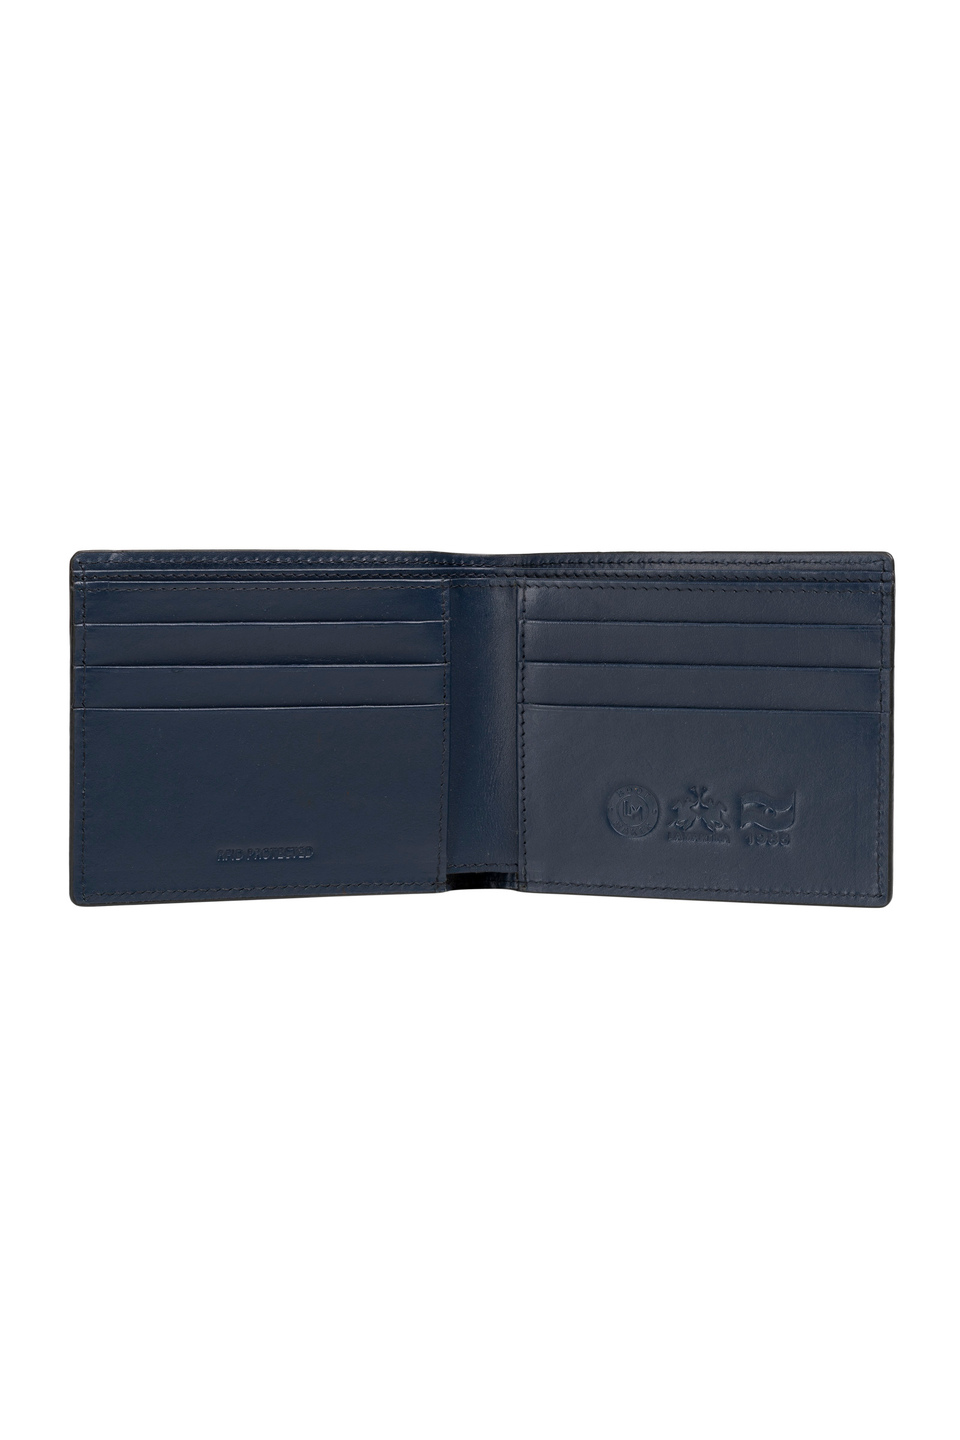 Men's leather wallet - Pablo | La Martina - Official Online Shop